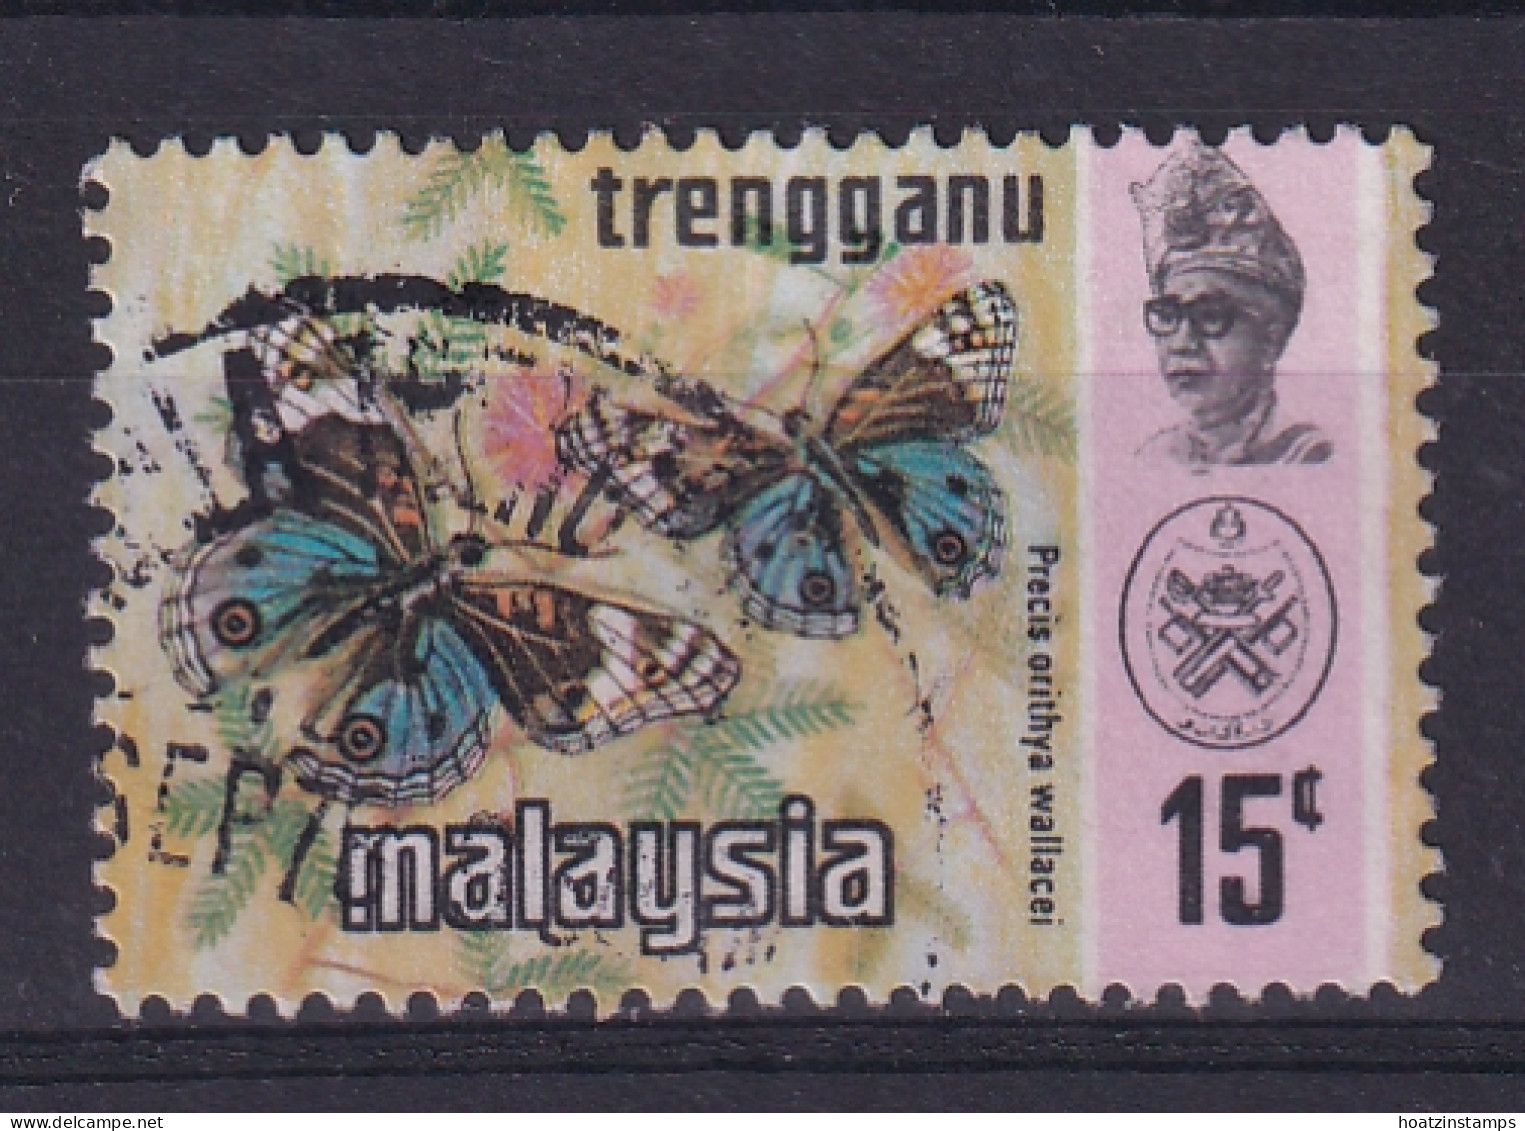 Malaya - Trengganu: 1971/78   Butterflies    SG117a   15c  [Photo]   Used  - Trengganu